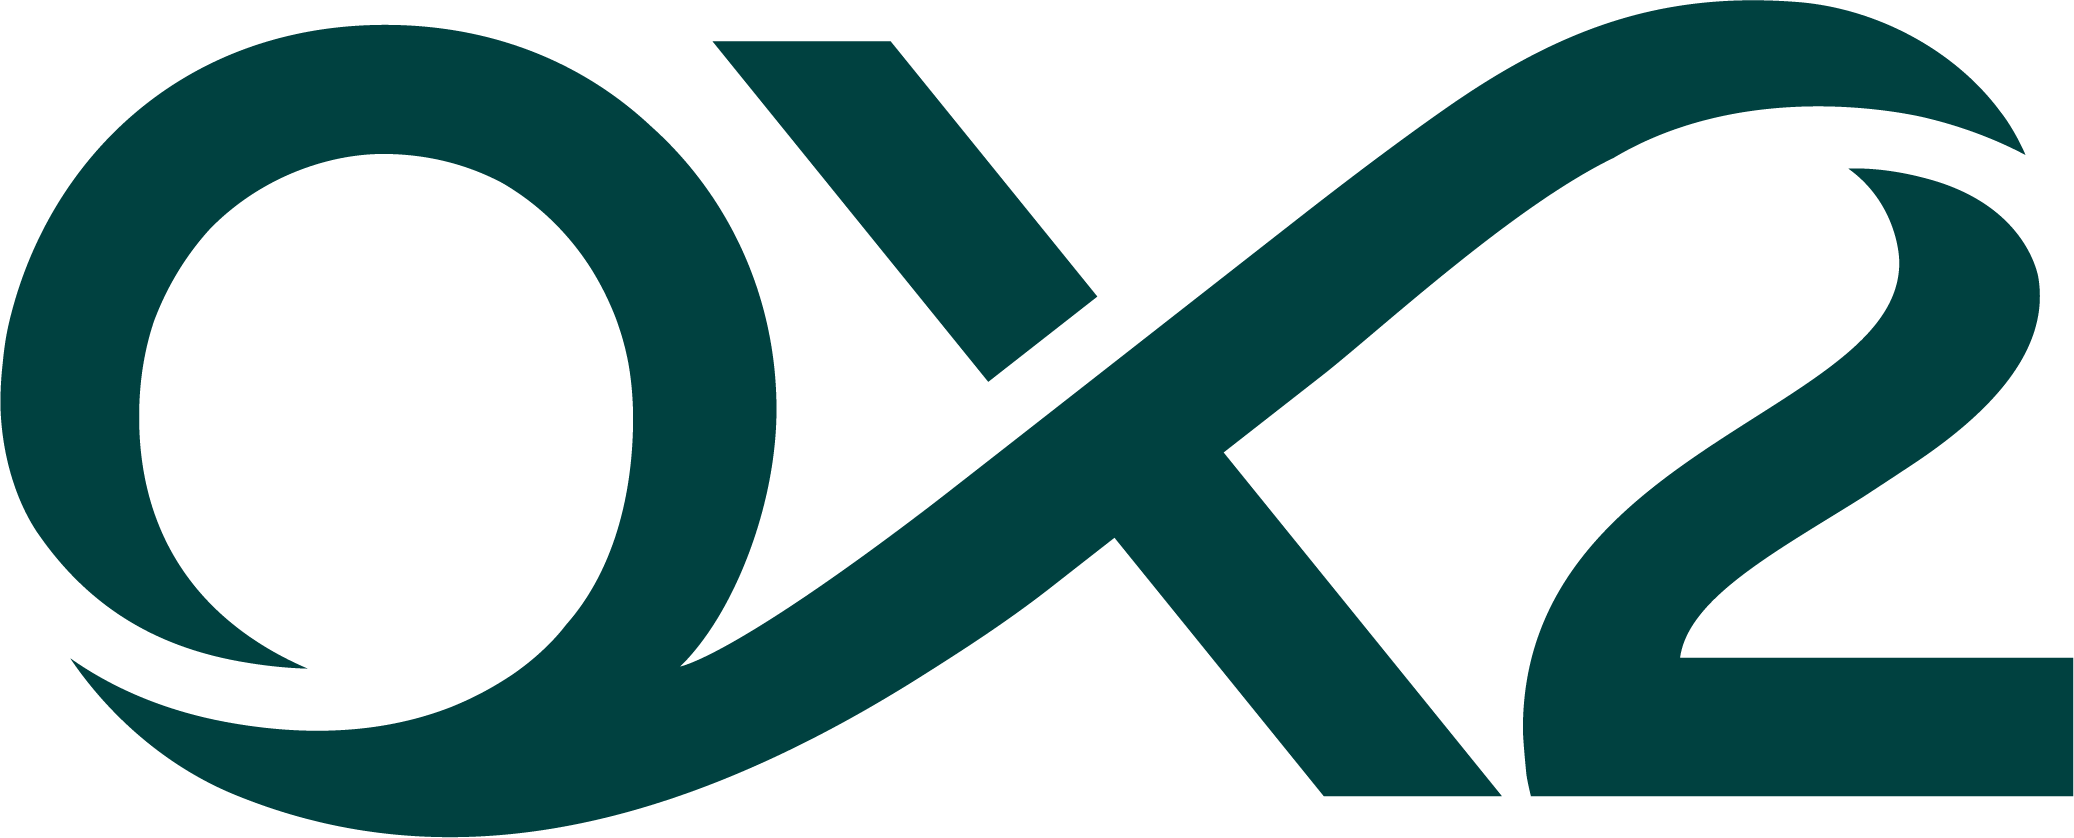 OX2 